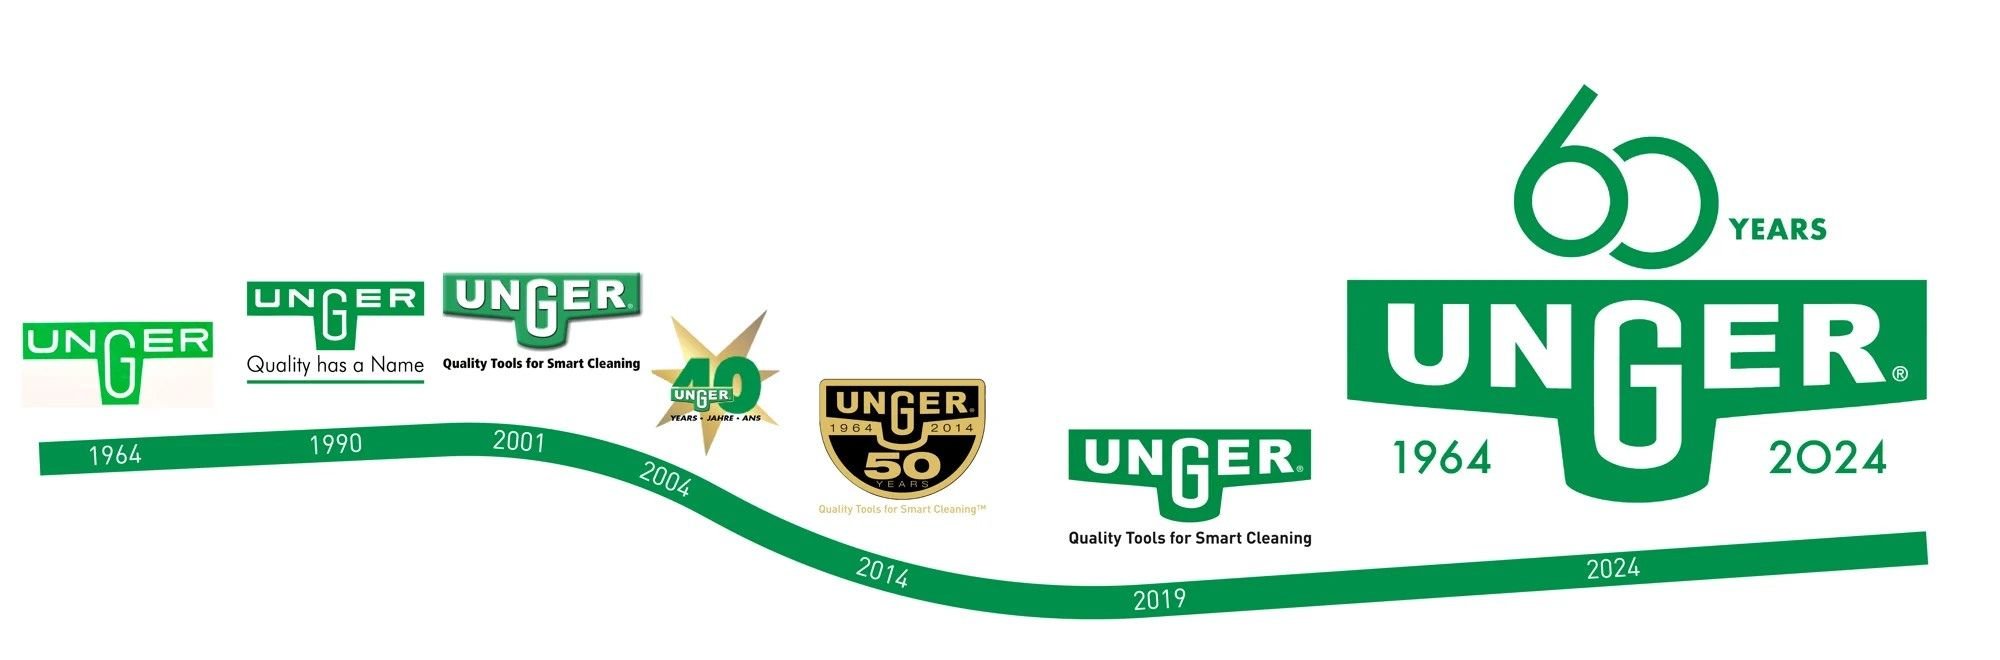 Unger's Logo history timeline